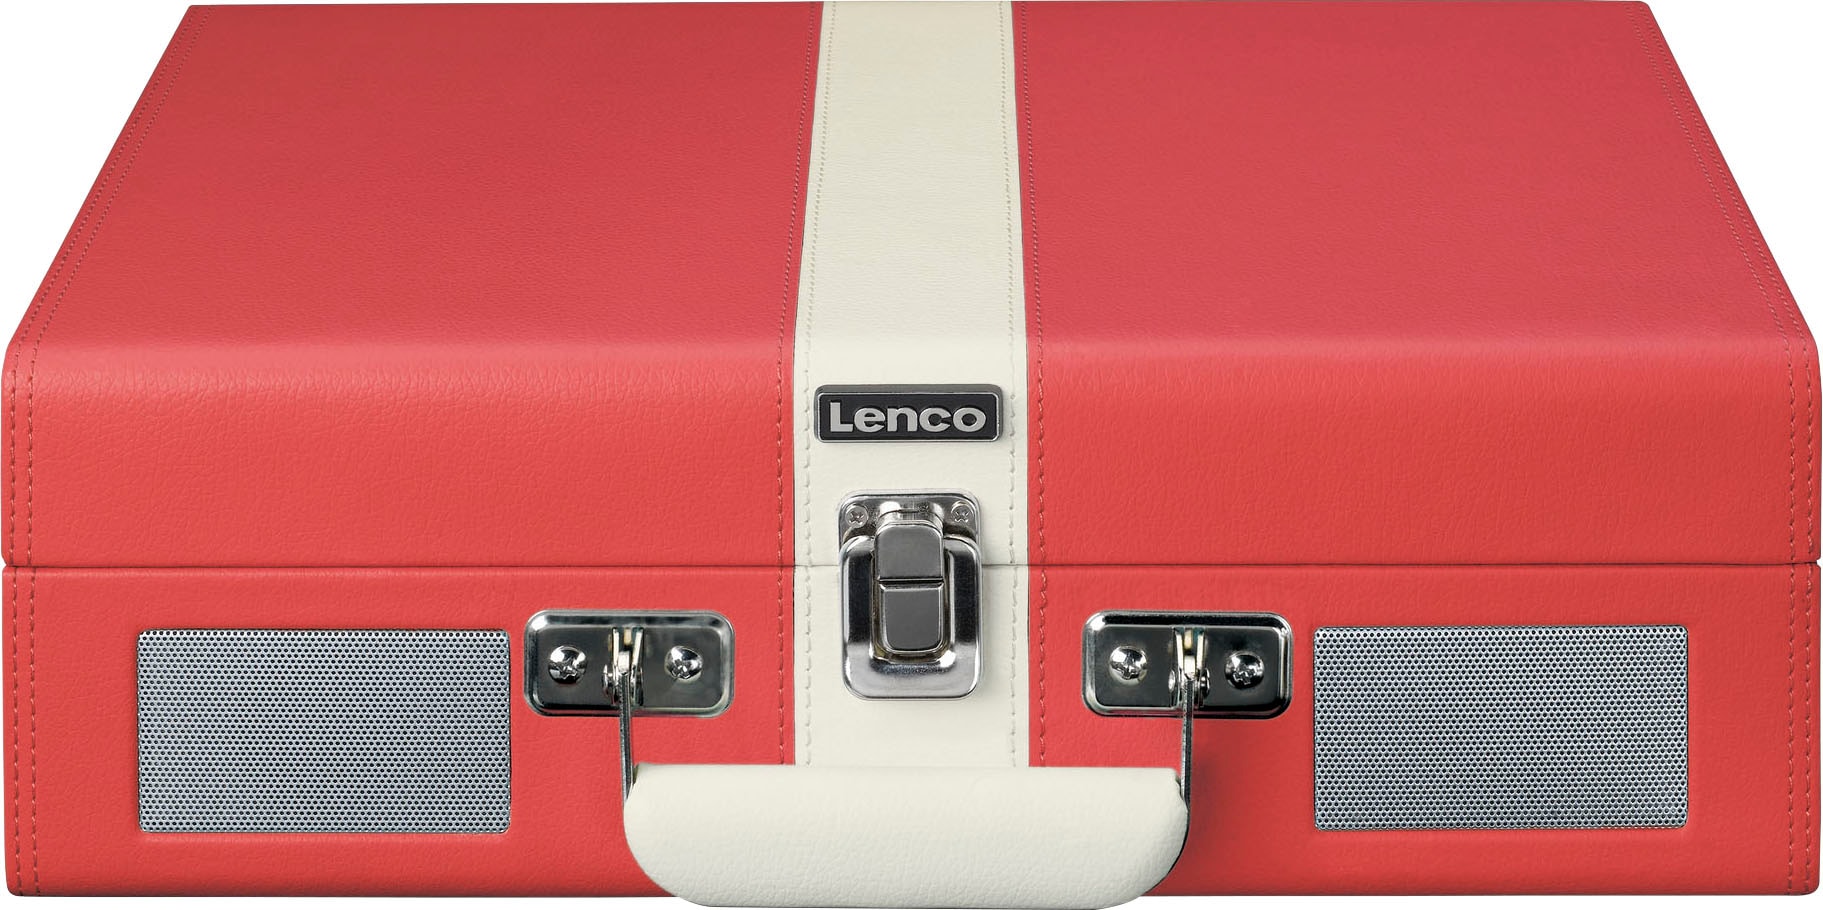 jetzt und »Koffer-Plattenspieler BT mit Lsp.« bei eingebauten Lenco OTTO Plattenspieler